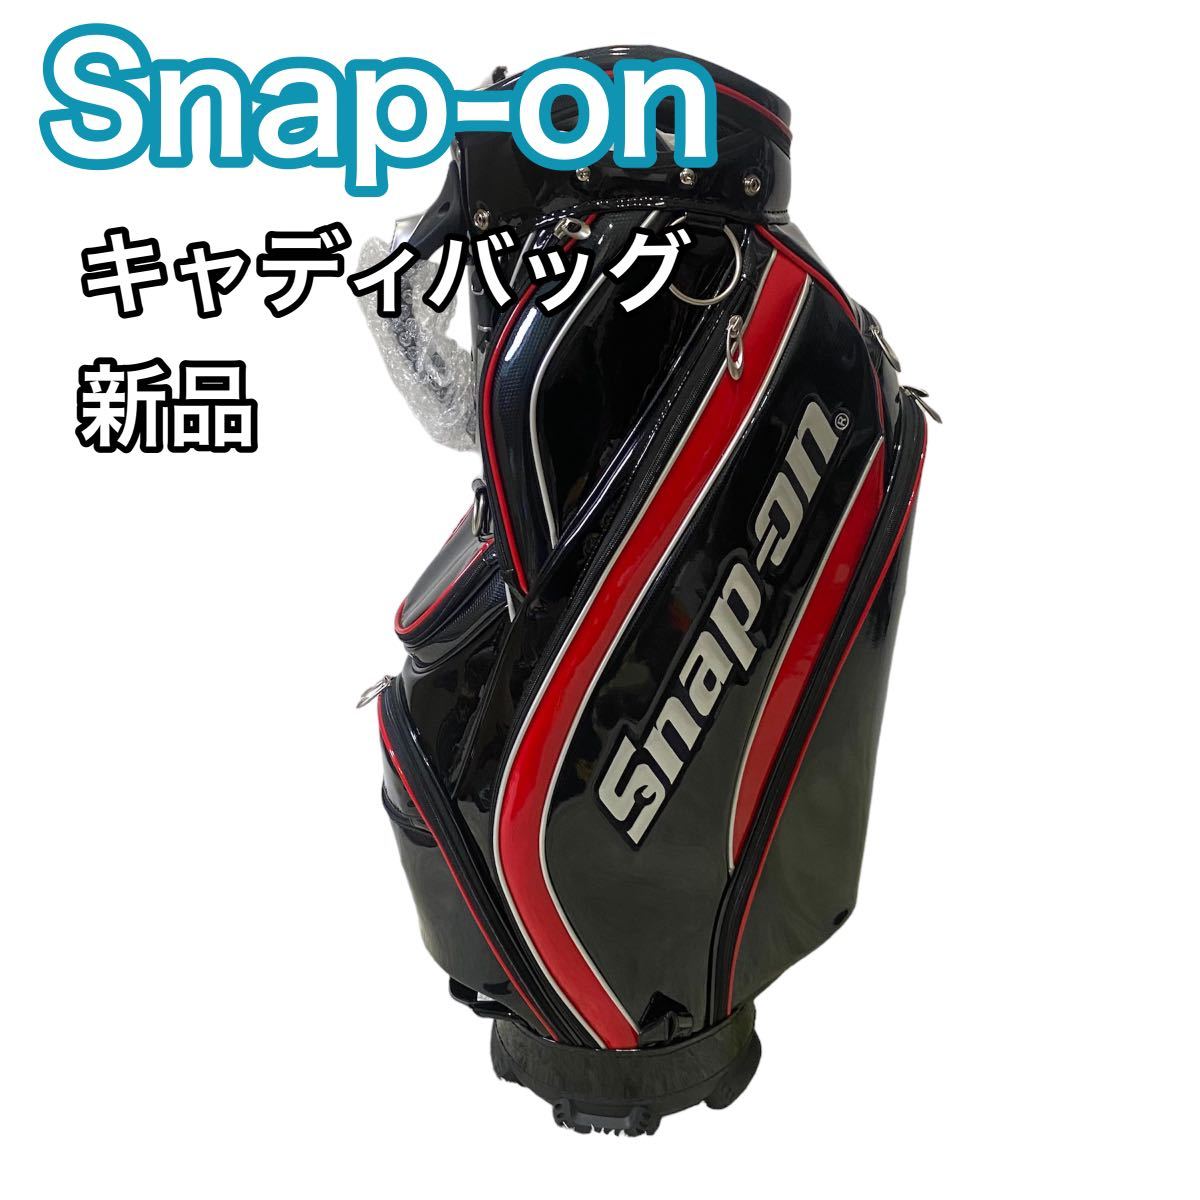 【新品】Snap-on スナップオン キャディバッグ ブラック ゴルフバッグ 希少 送料無料